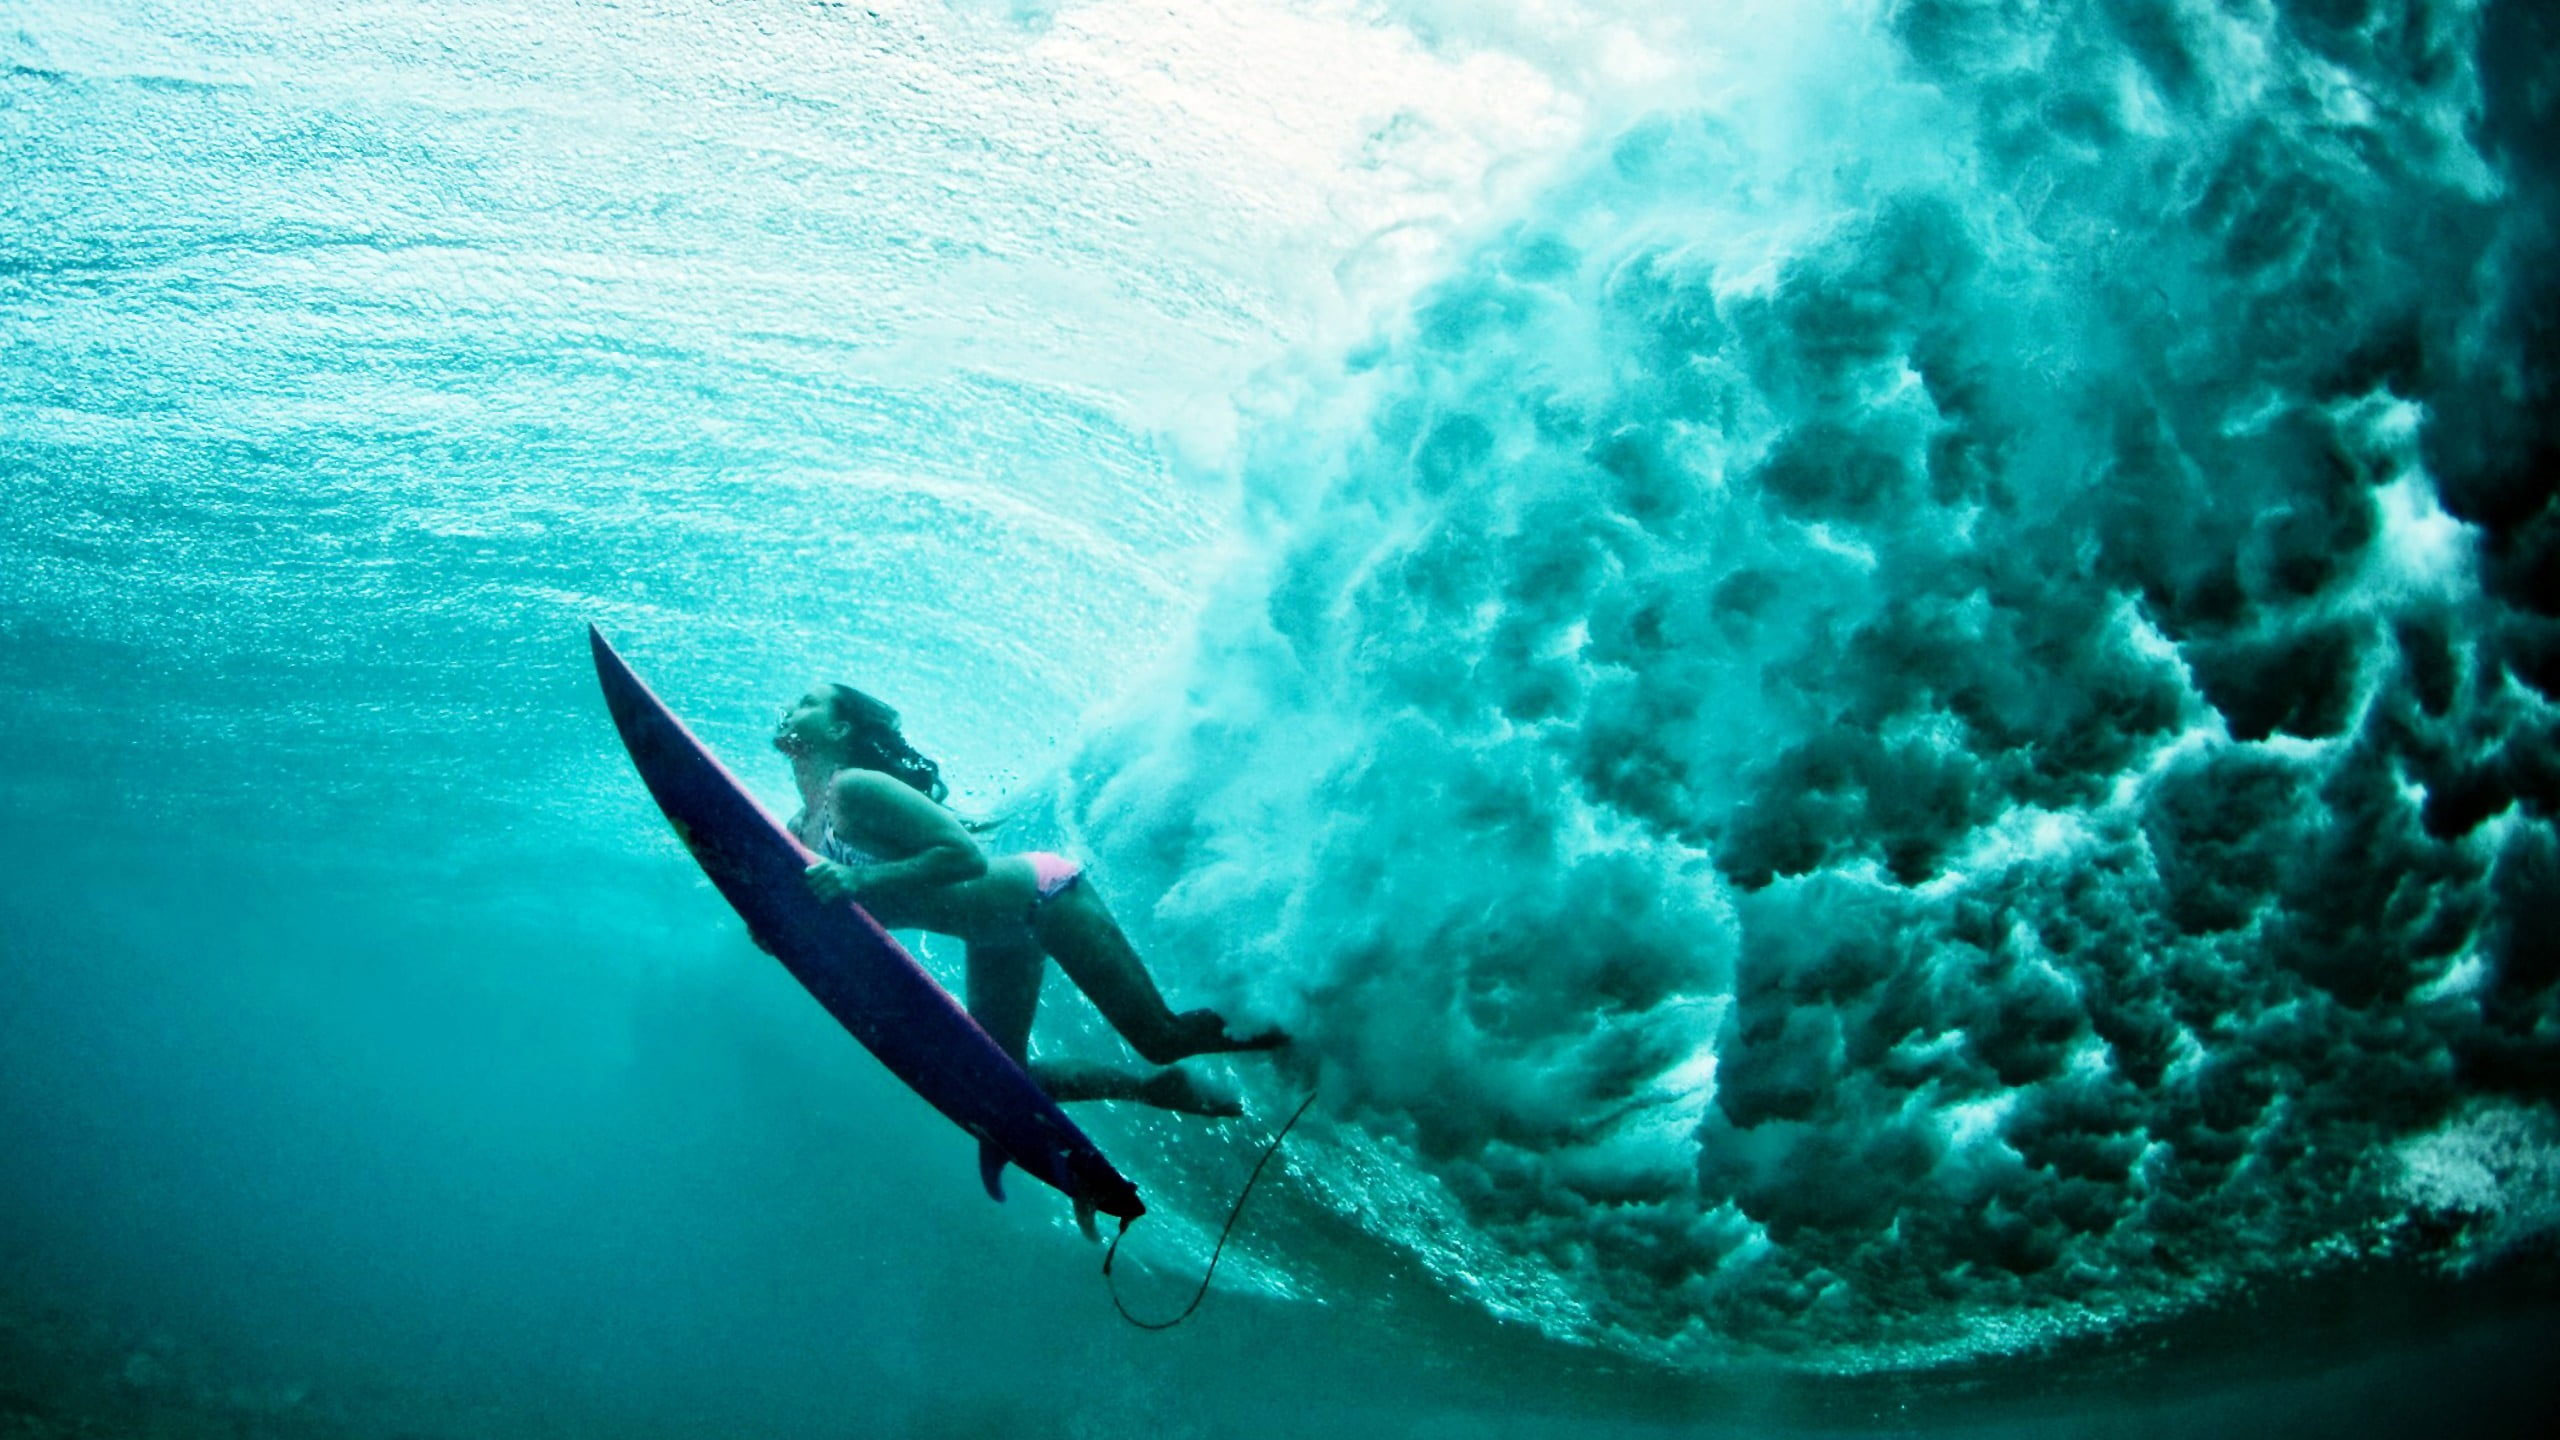 Blue surfboard, women, water, underwater, surfing, sports, sea